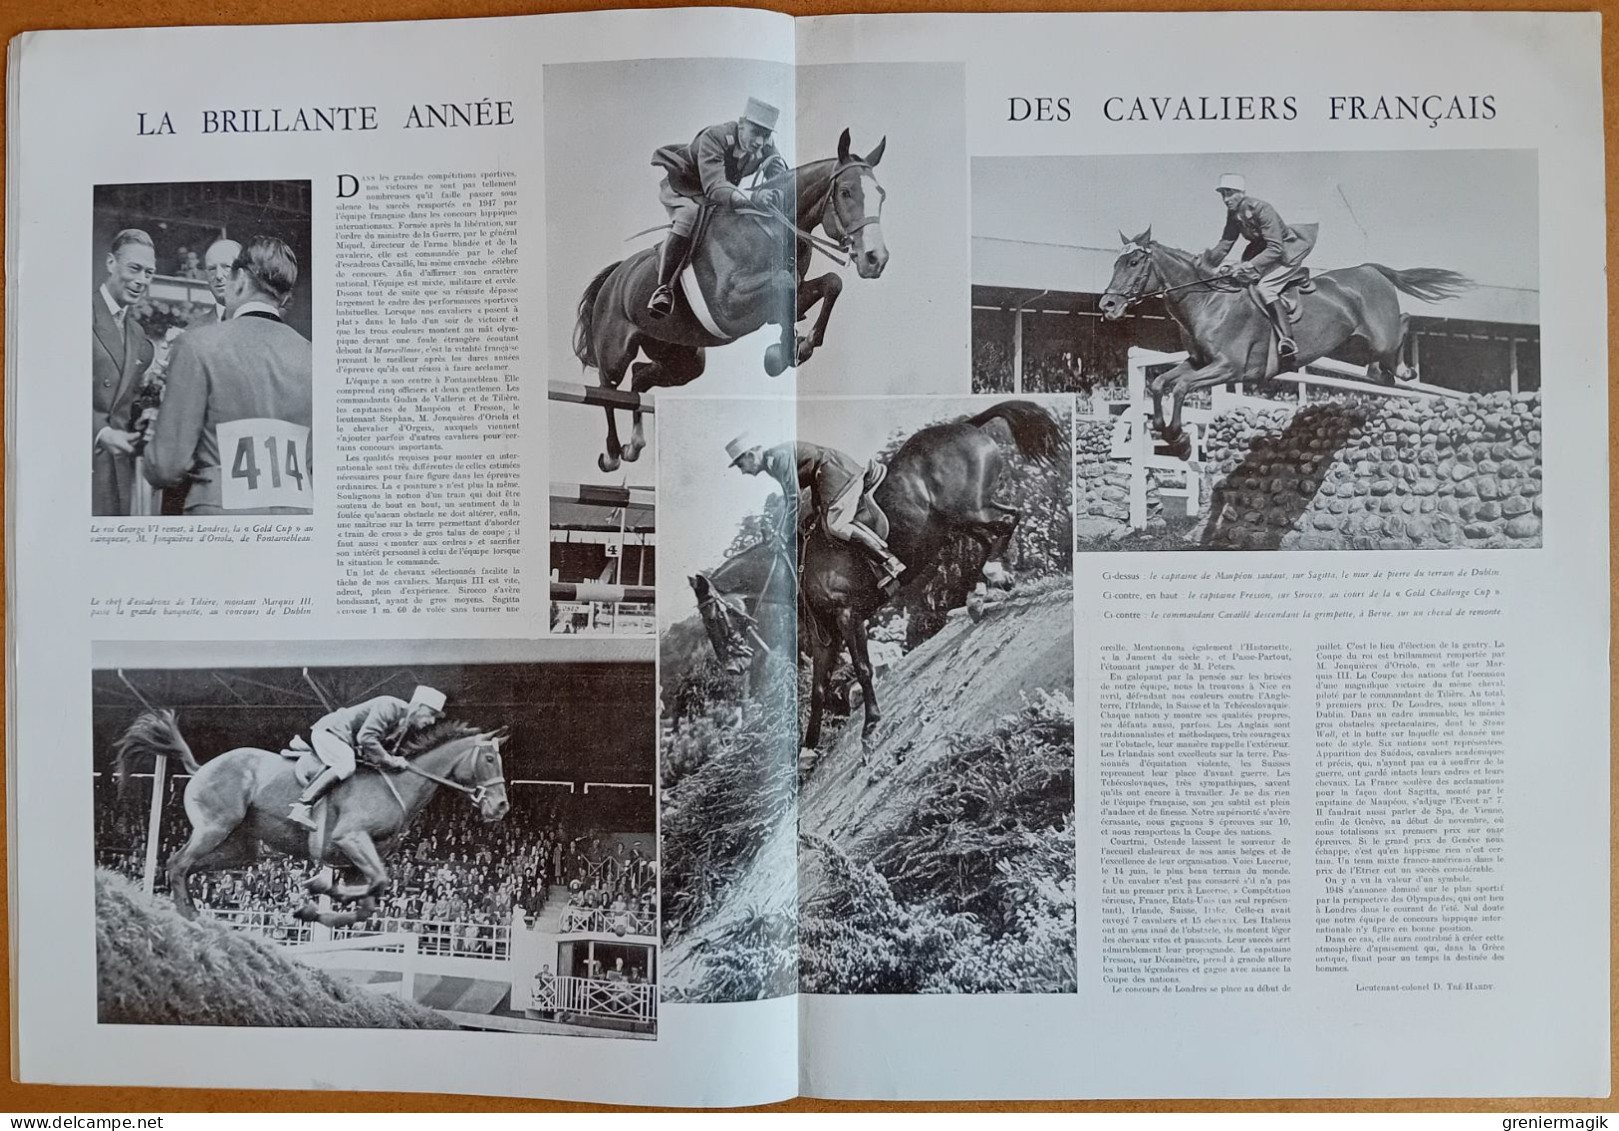 France Illustration N°119 10/01/1948 De Gaulle à Saint-Etienne/Rhénanie/Ecoles de l'air/Victor-Emmanuel III est mort